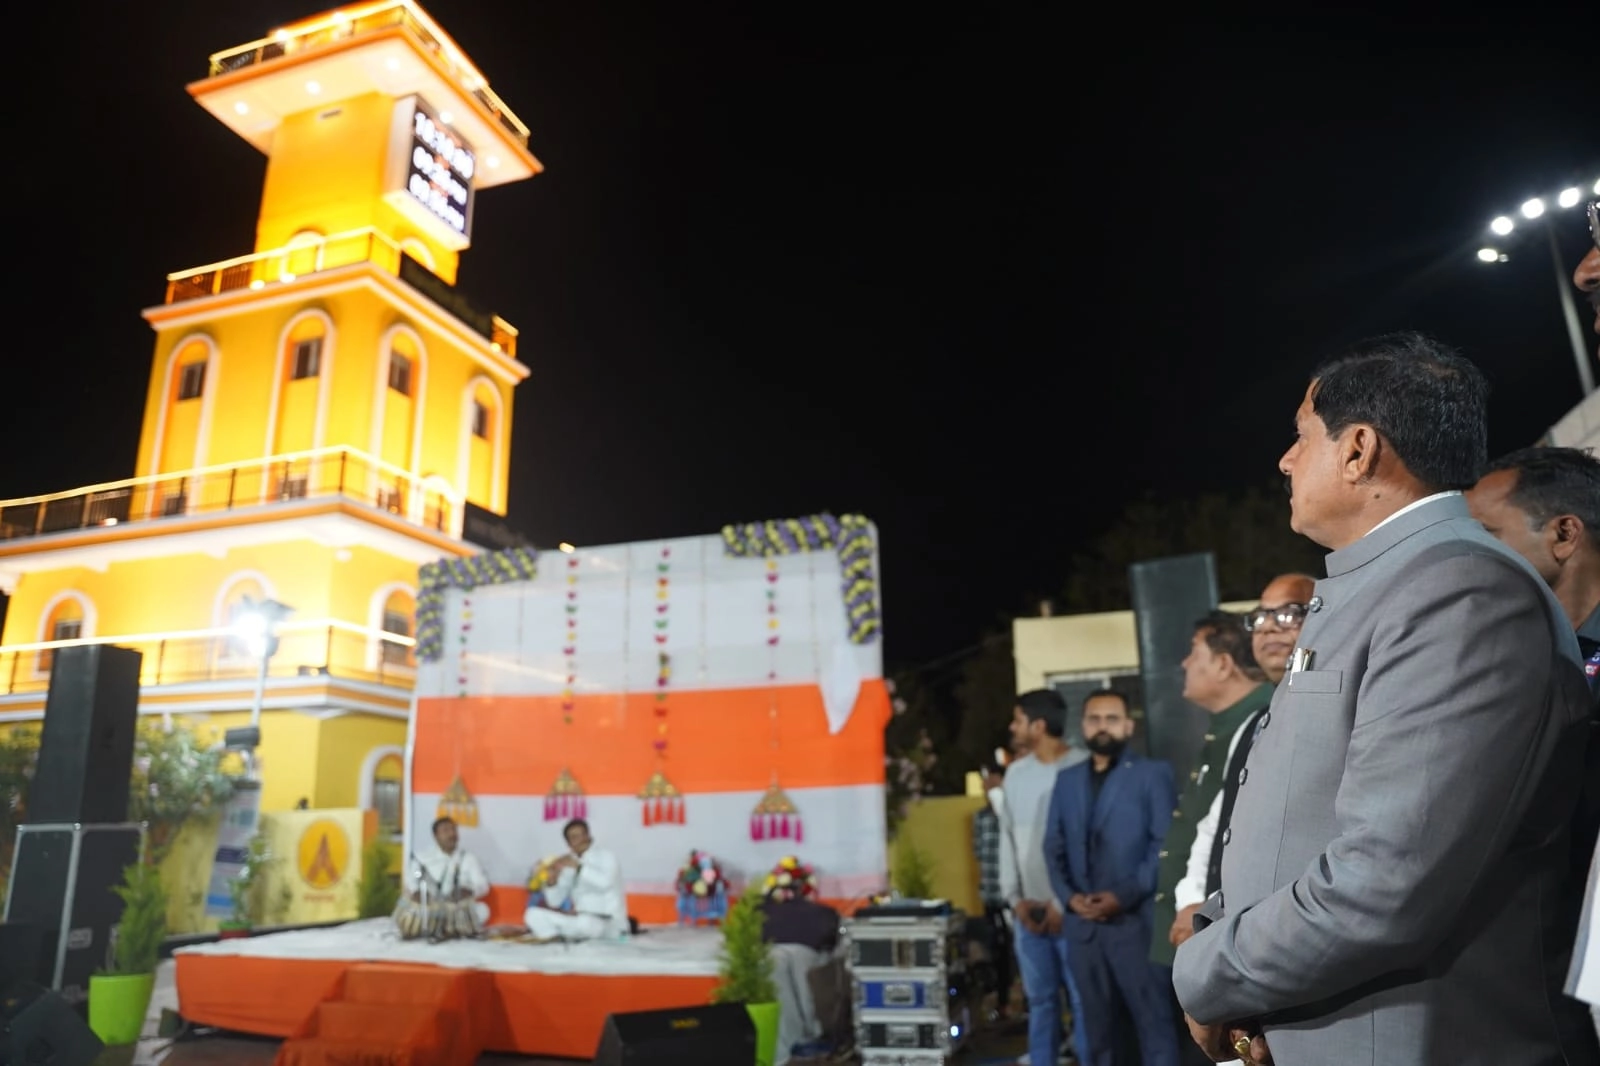 समय के बदलते चक्र में वैदिक घड़ी से दुनिया में मध्यप्रदेश और देश का नाम बढ़ेगा: CM डॉ. मोहन यादव - Vedic clock of Ujjain will make Madhya Pradesh famous in the world